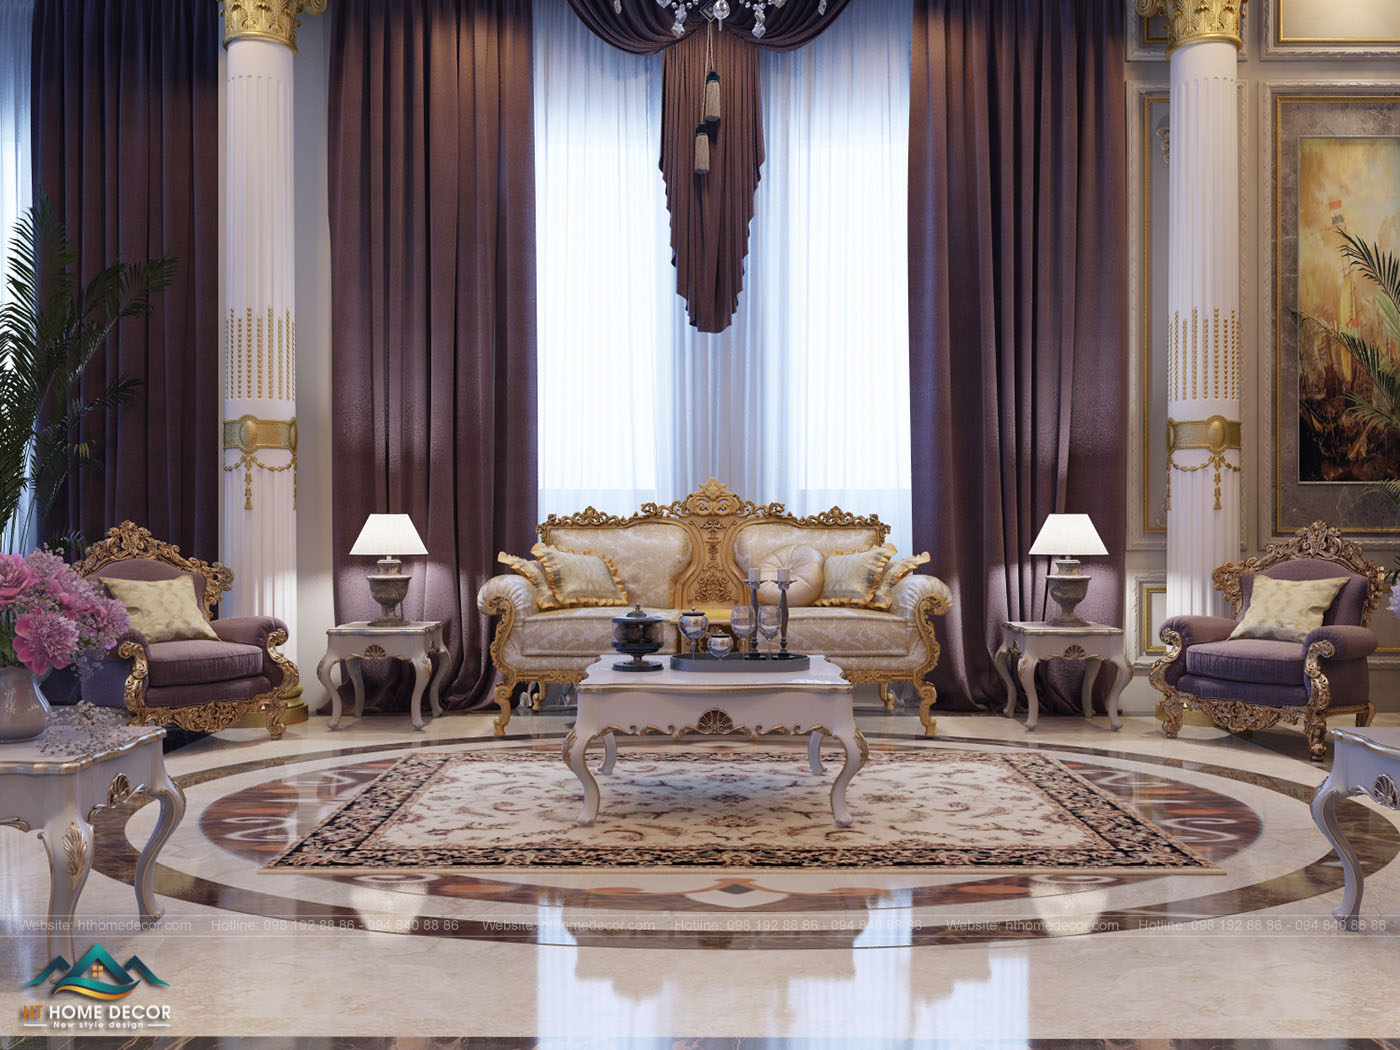 Không gian rộng rãi của phòng khách, được sắp xếp nhiều chiếc ghế xung quanh như một cung điện để các vua chúa thời xưa họp mặt.